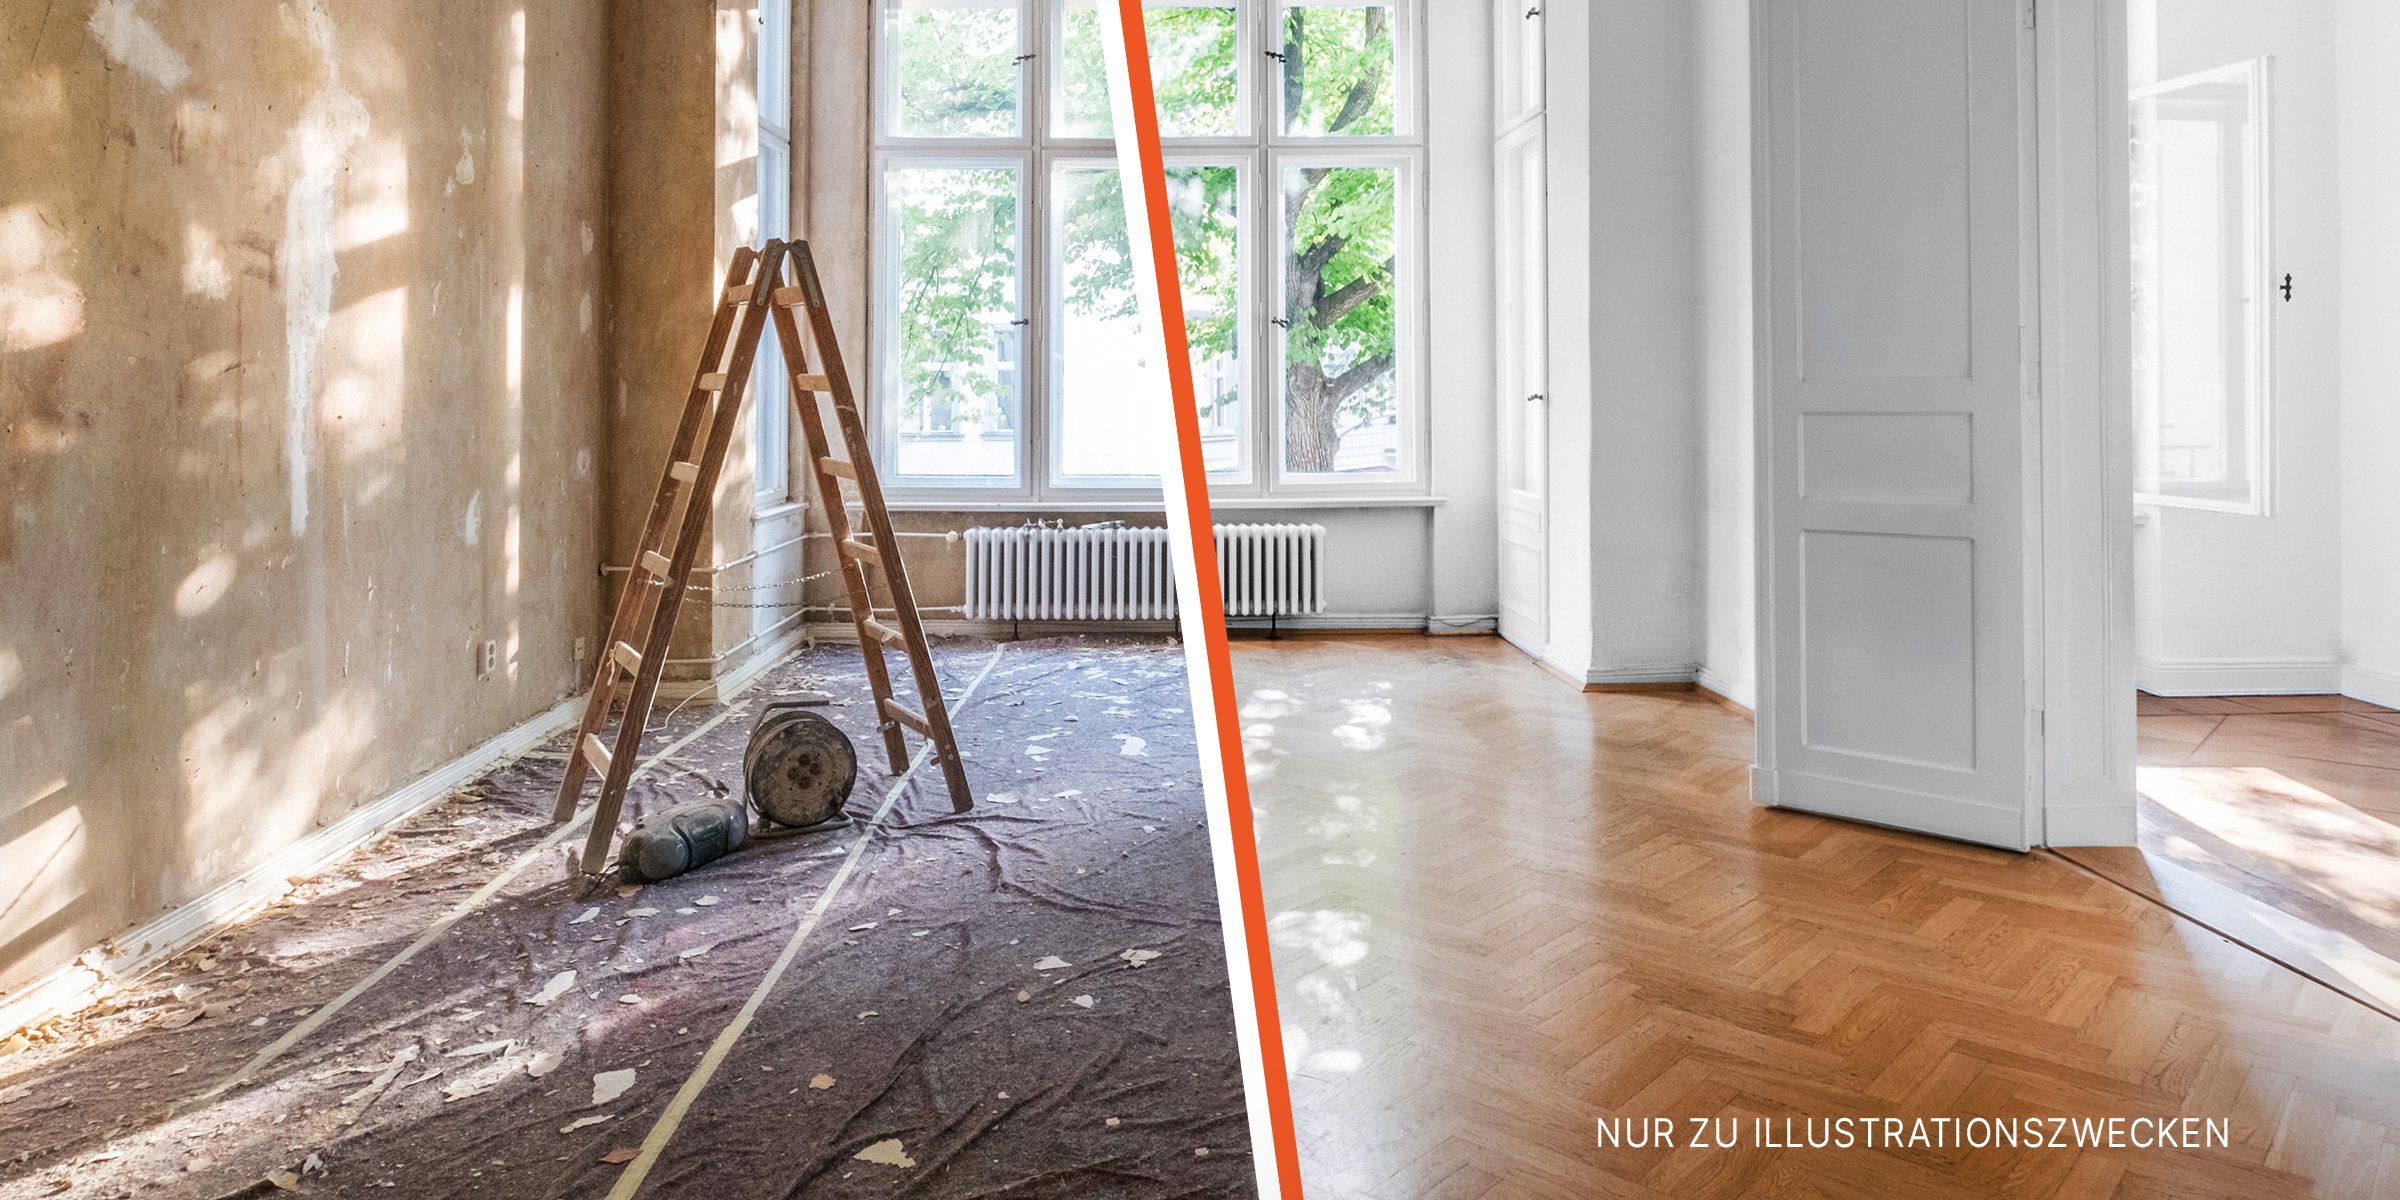 Haus vor und nach der Renovierung | Quelle: Shutterstock | Getty Images